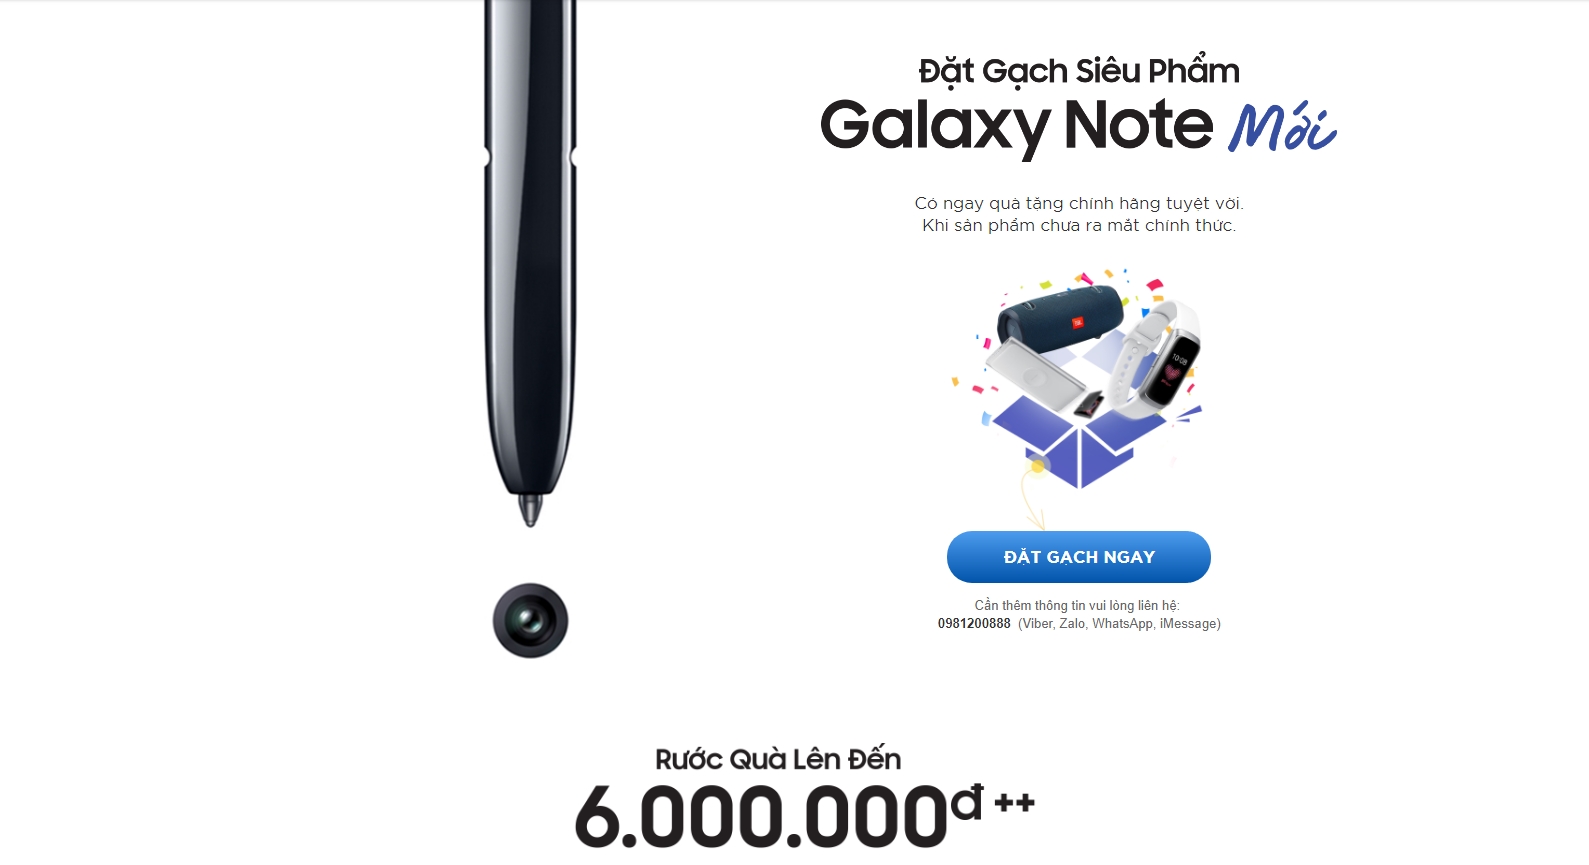 Tổng hợp bộ quà tặng khi đặt trước Galaxy Note 10, giá trị lên đến tận 6 triệu và còn được ưu đãi giảm giá nữa